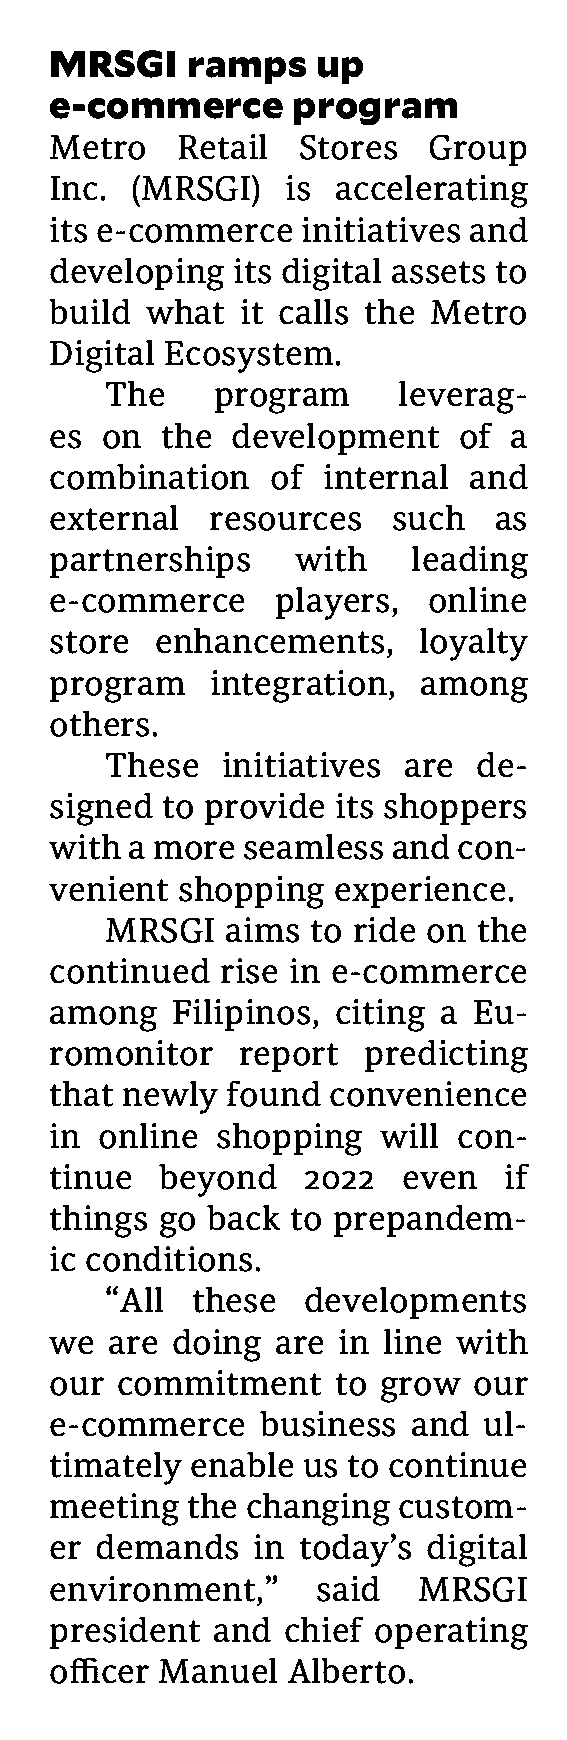 Sept 27 MRSGI ramps up e commerce program Philippine Daily Inquirer